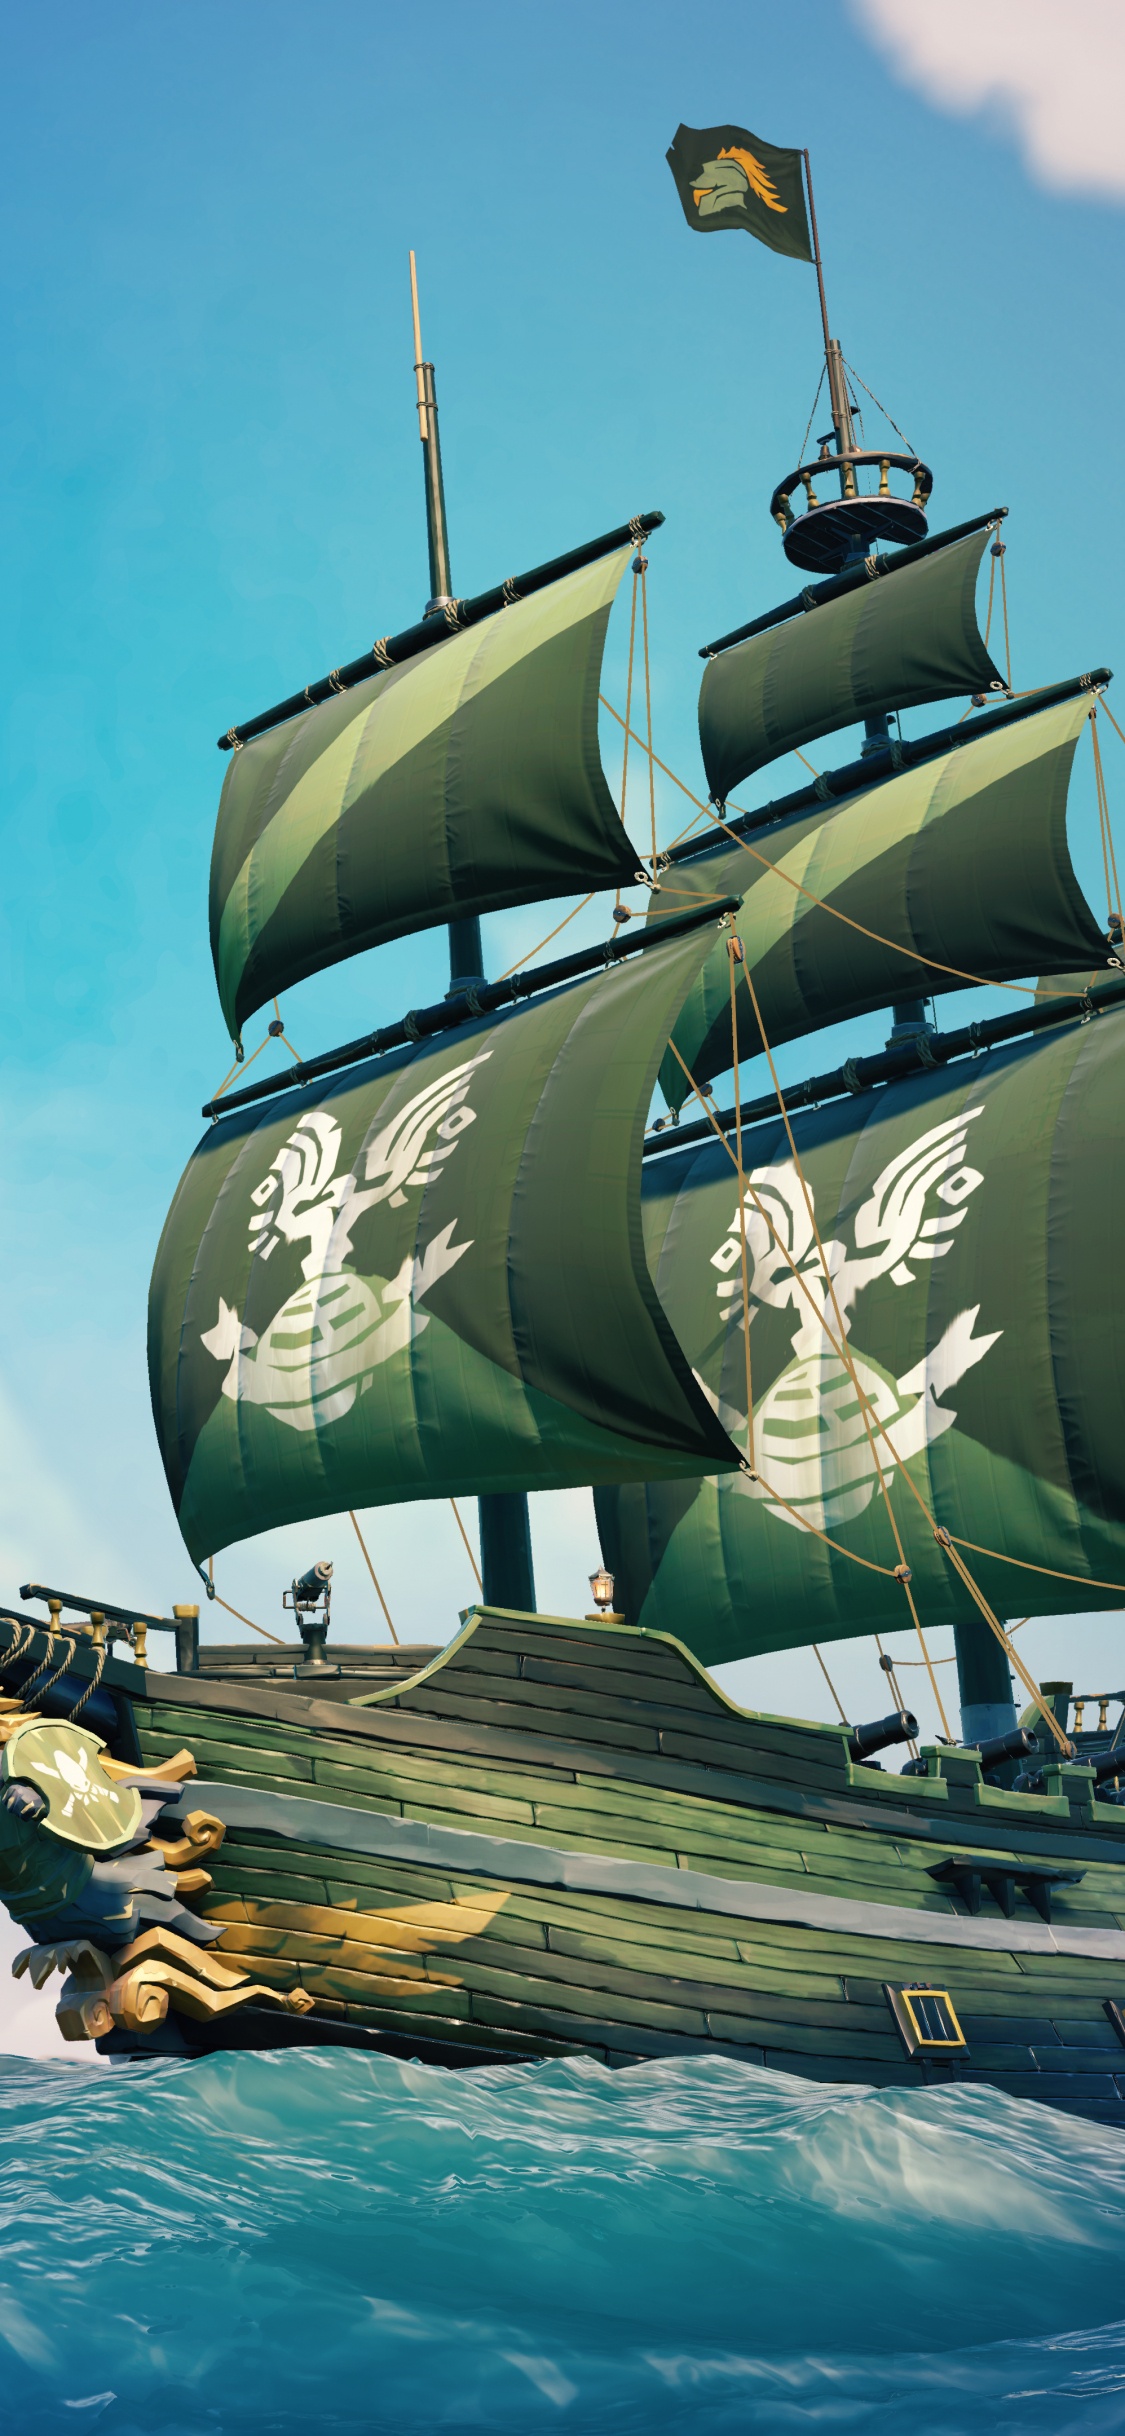 Xbox游戏室, 马尼拉大帆船, 船只, Fluyt, 旗舰 壁纸 1125x2436 允许